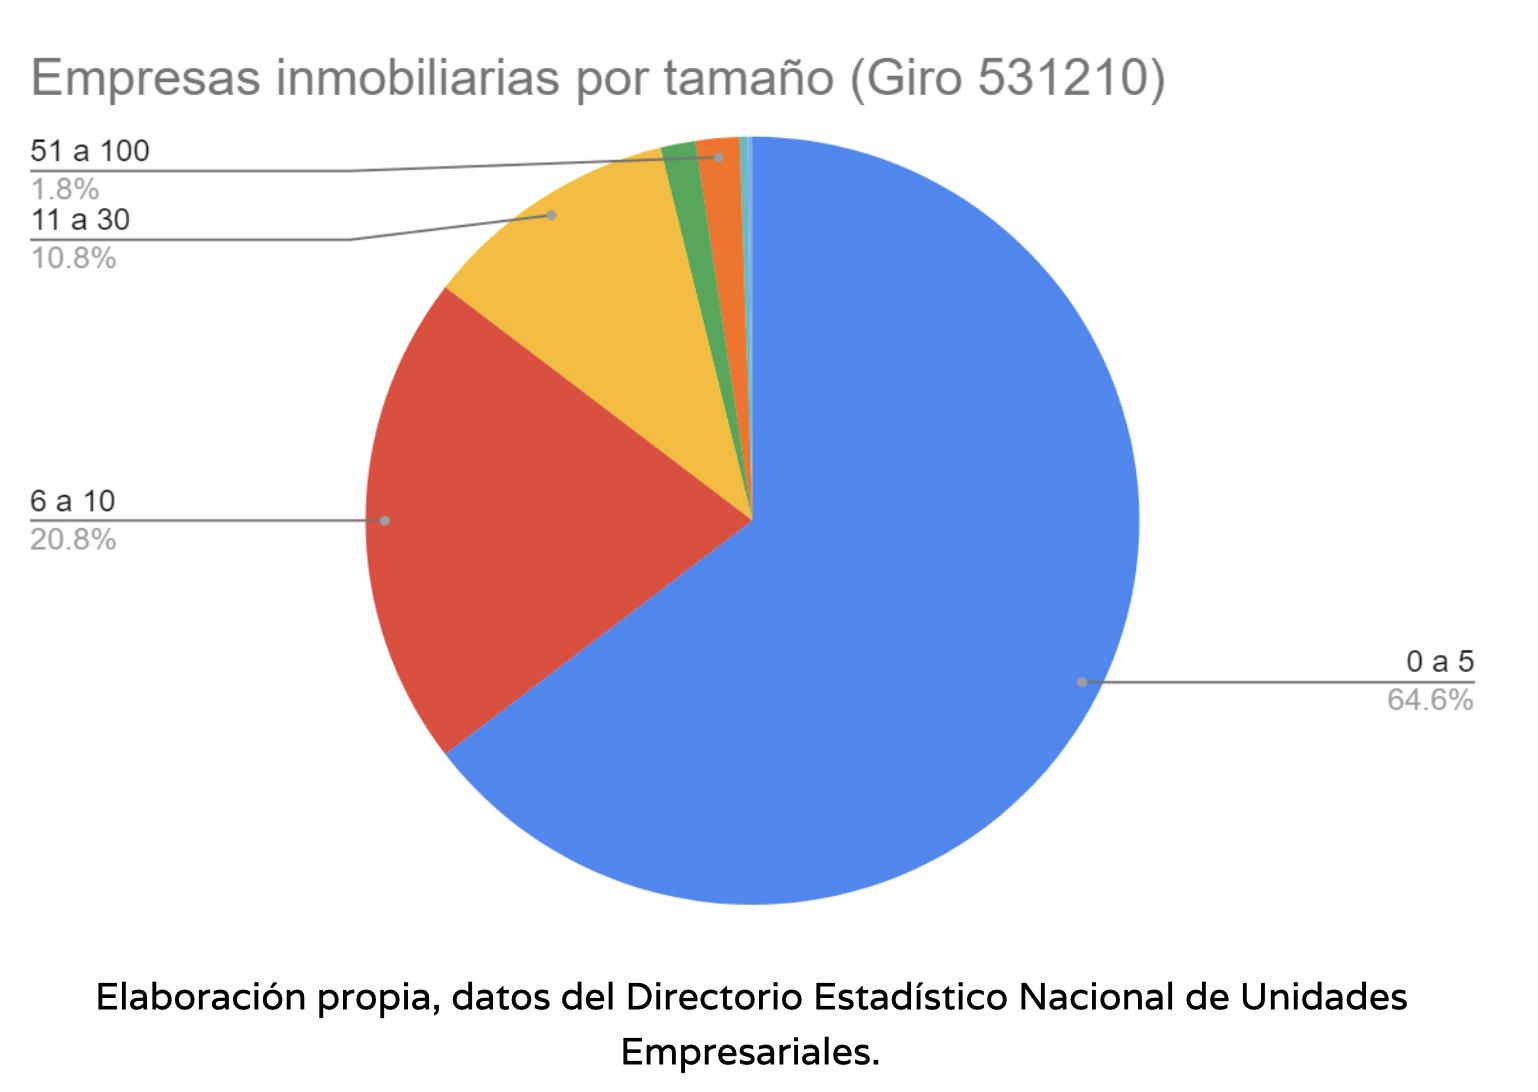 $!Número de empresas inmobiliarias en Jalisco según la cantidad de empleados